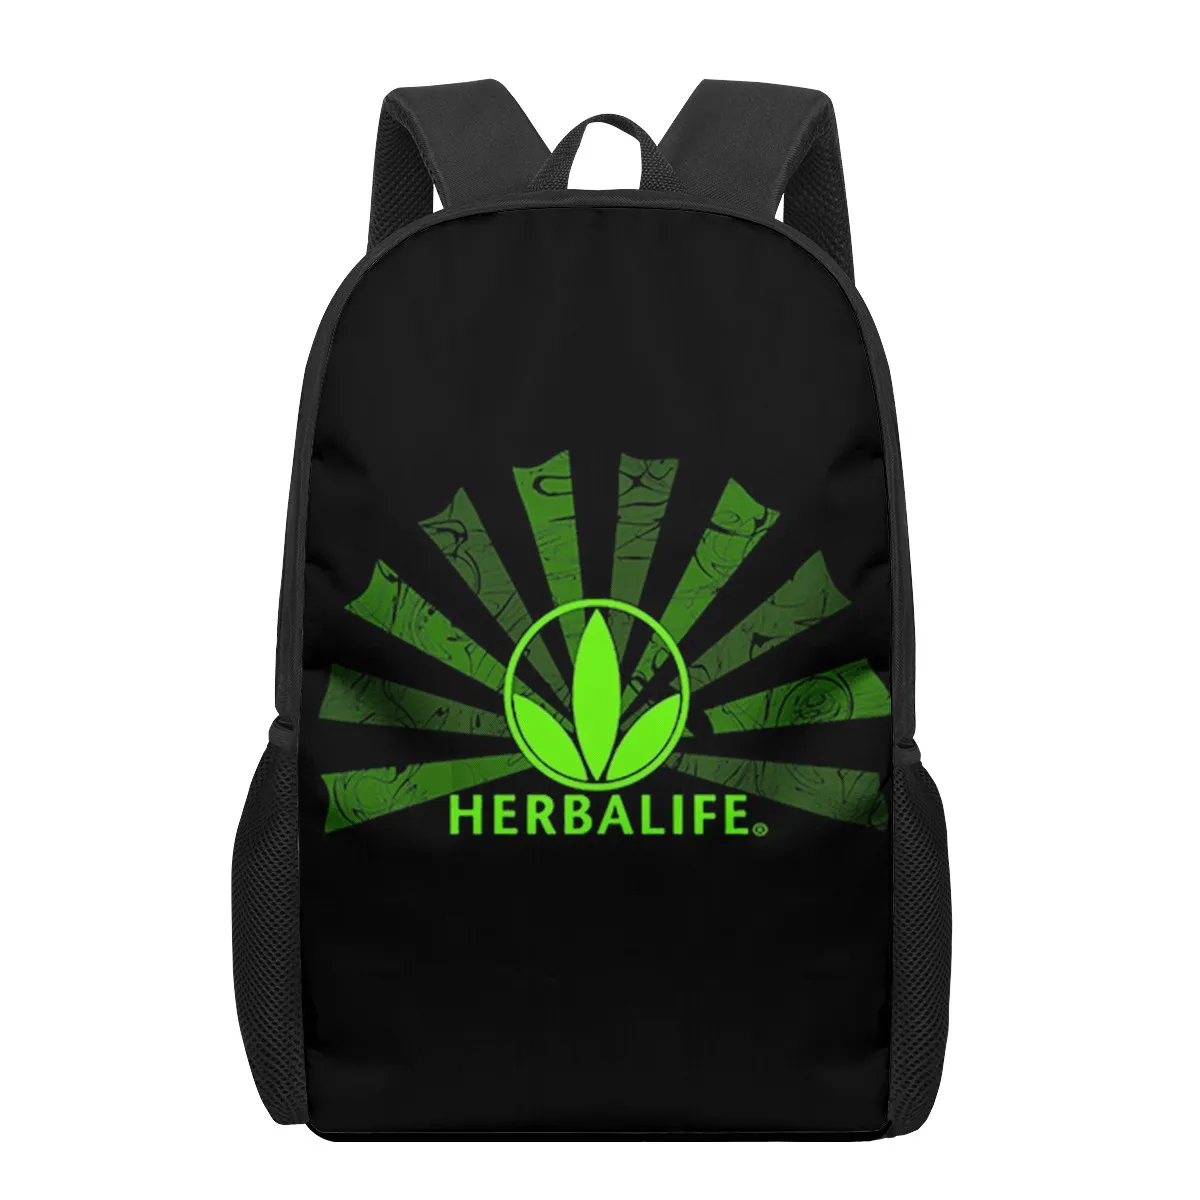 Herbalife Brand Print 16-inch teen school bag boys girls kids school backpack student school bag school bag